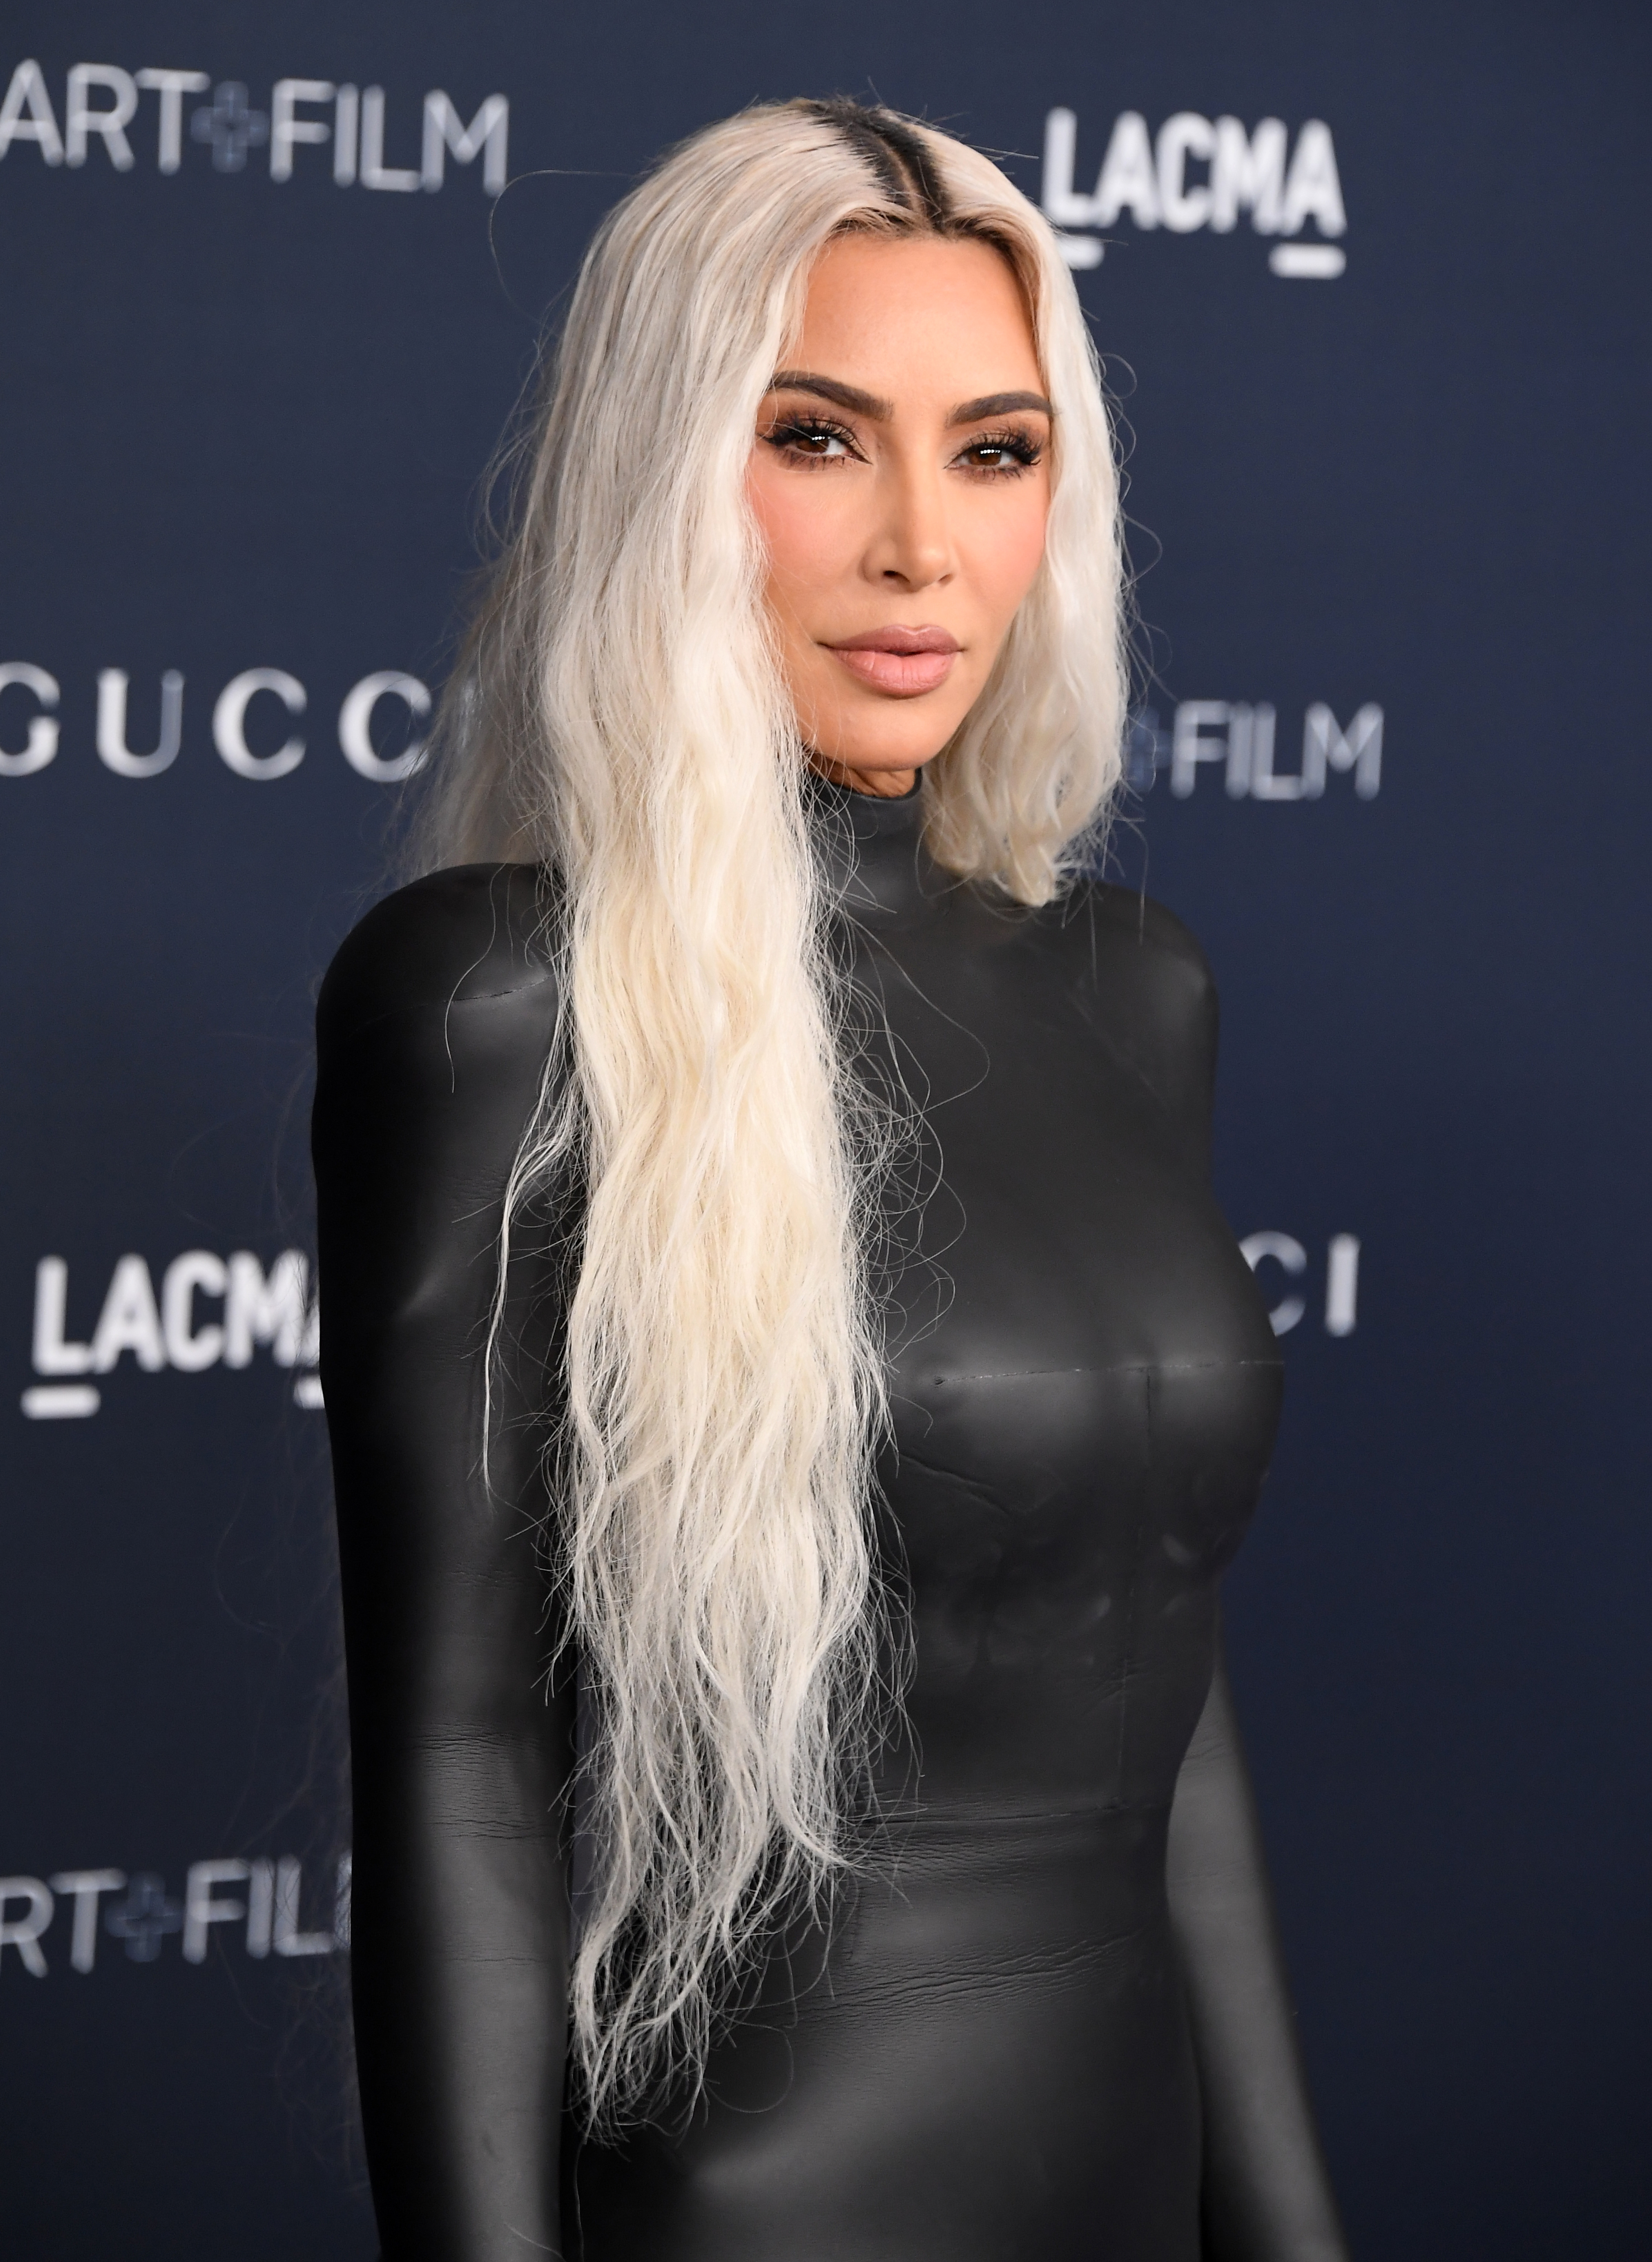 kardashian free sex tape